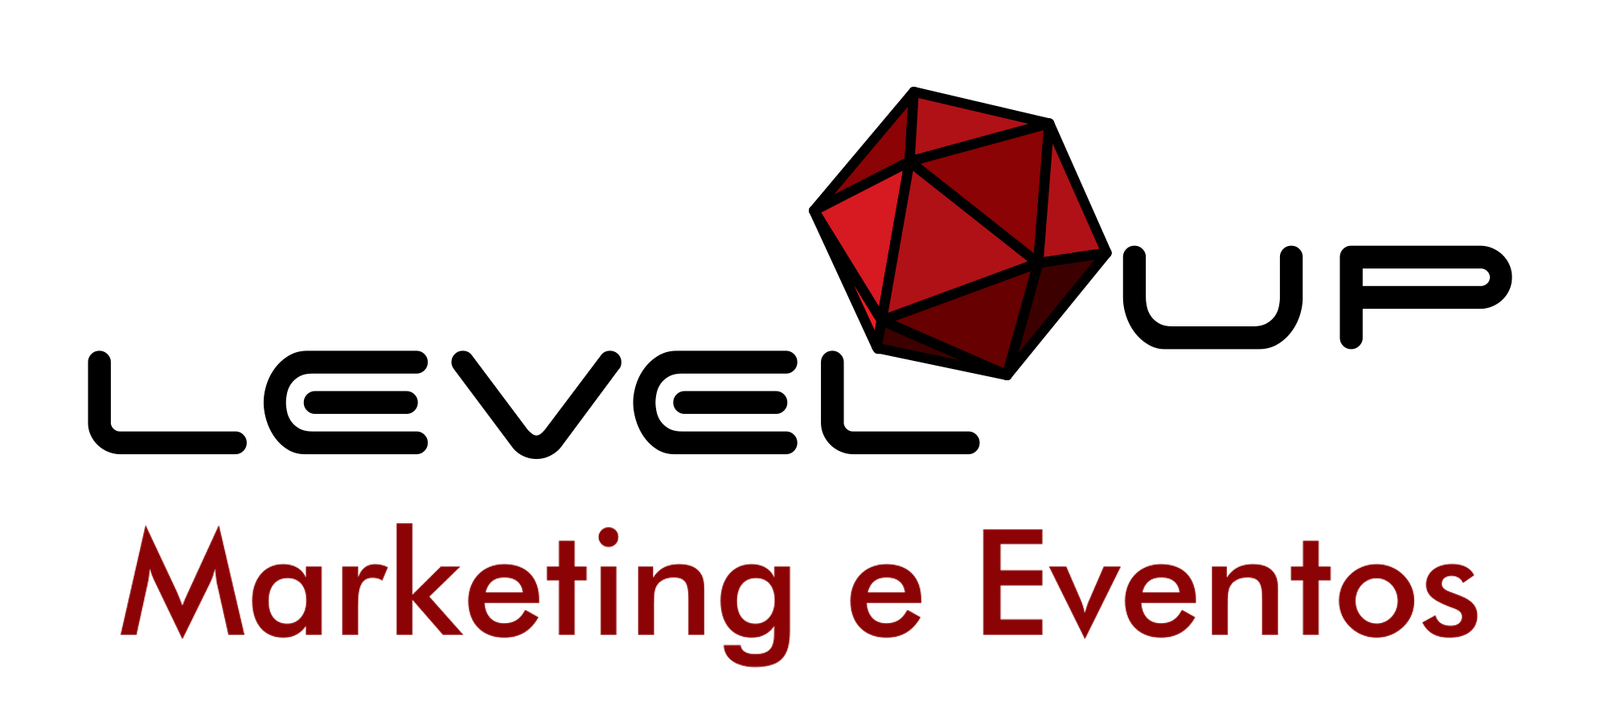 Level Up Marketing e Eventos